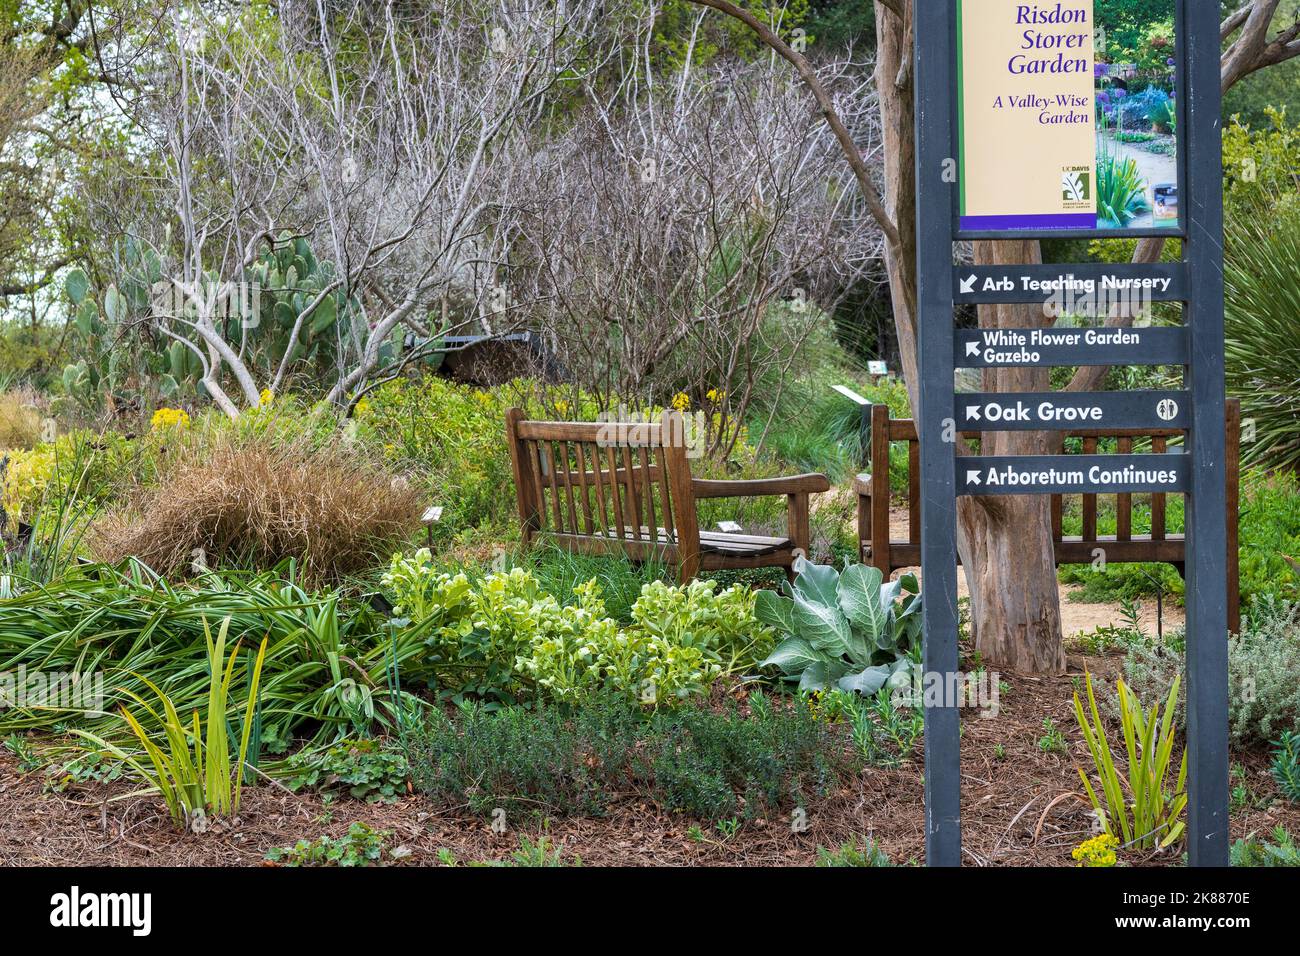 Davis, Californie, États-Unis. 21 mars 2020. L'arboretum de l'UC Davis Risbon Storer Garden au printemps, lors d'une journée ensoleillée et bleue sans nuages, typique de Banque D'Images